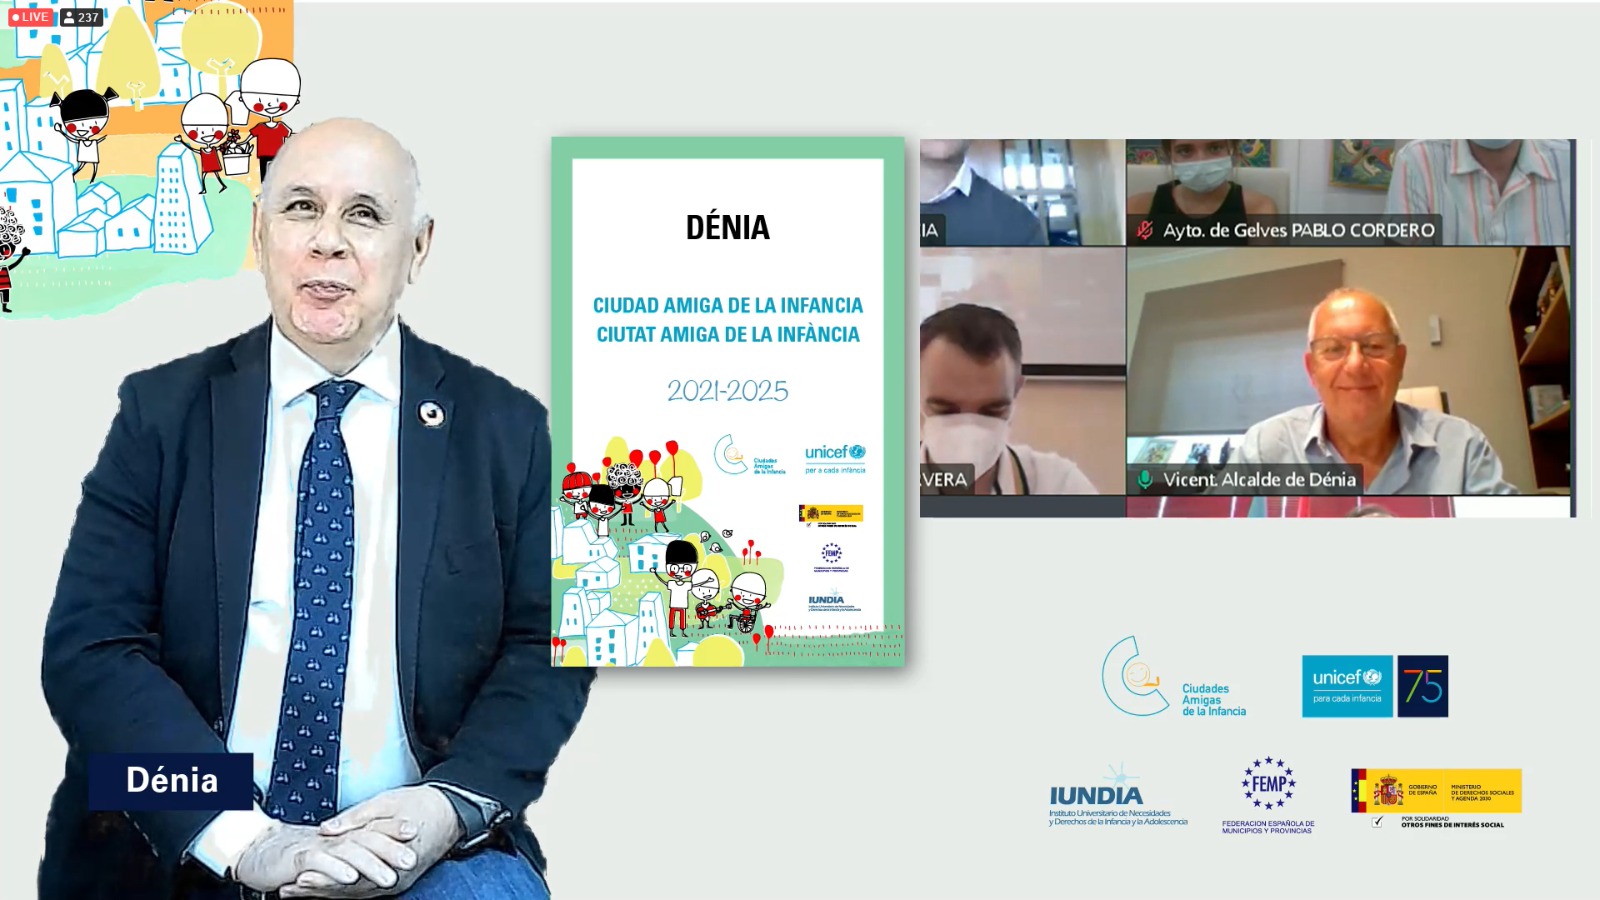 Acto virtual de entrega a Dénia del reconocimiento como Ciudad Amiga de la Infancia